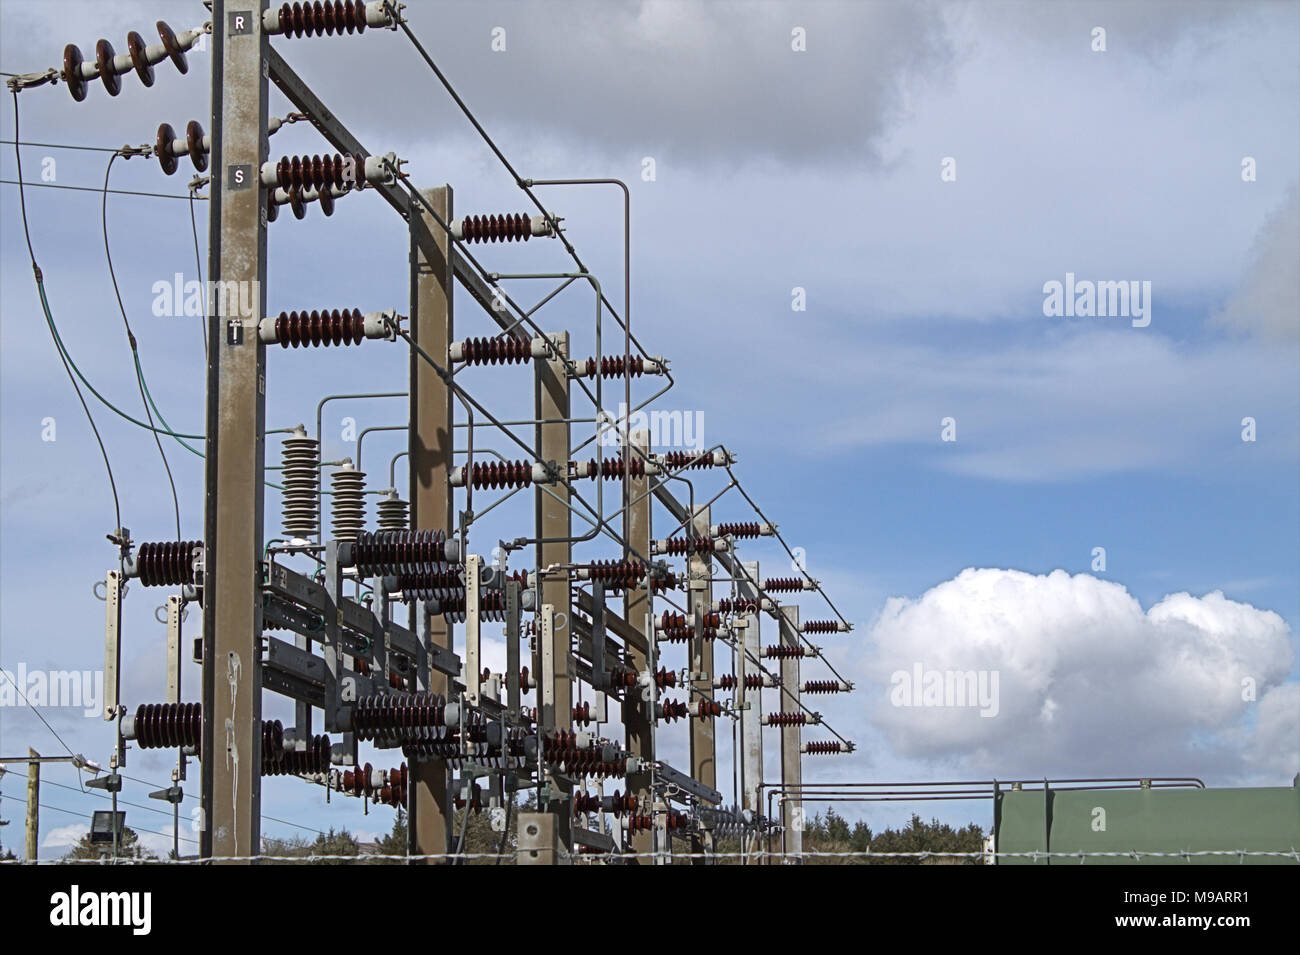 Sous-station d'électricité une partie de l'enceinte du réseau de distribution électrique dans la région de West Cork, Irlande Banque D'Images